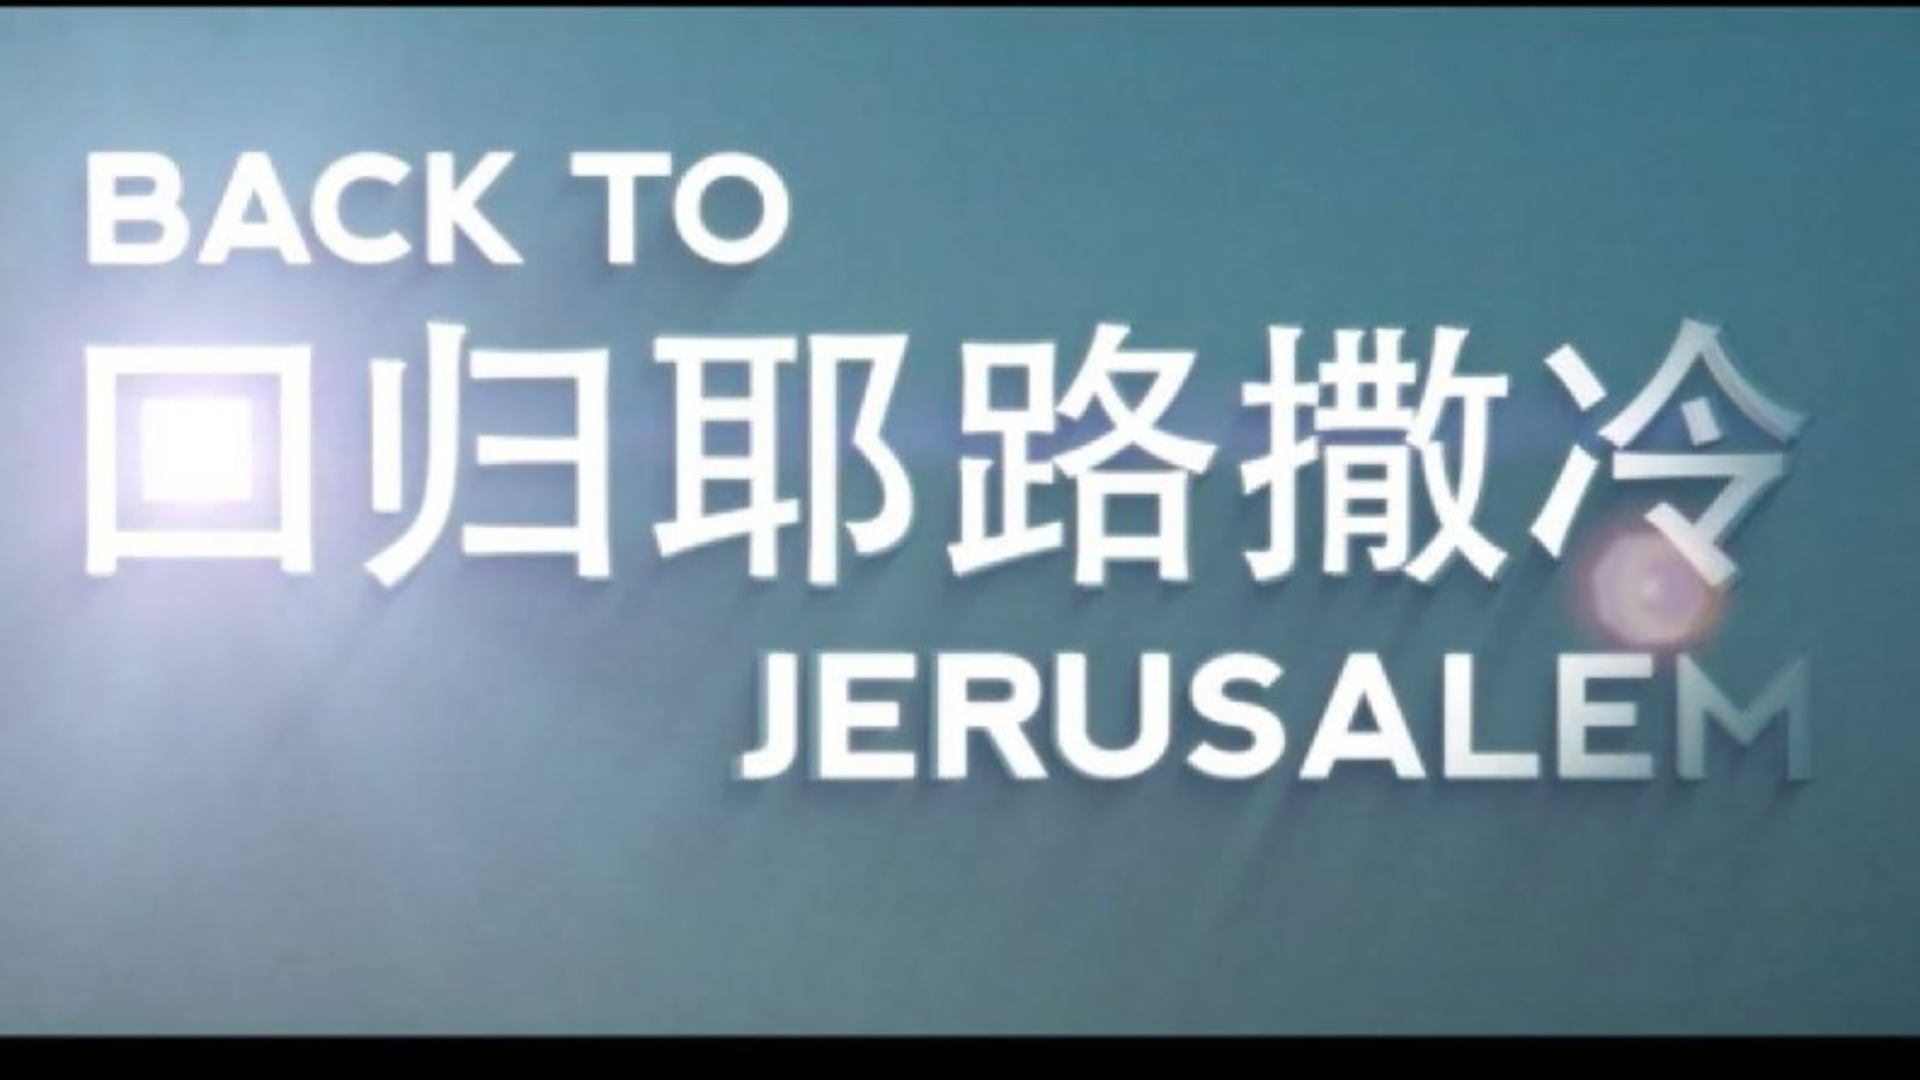 Back To Jerusalem logo